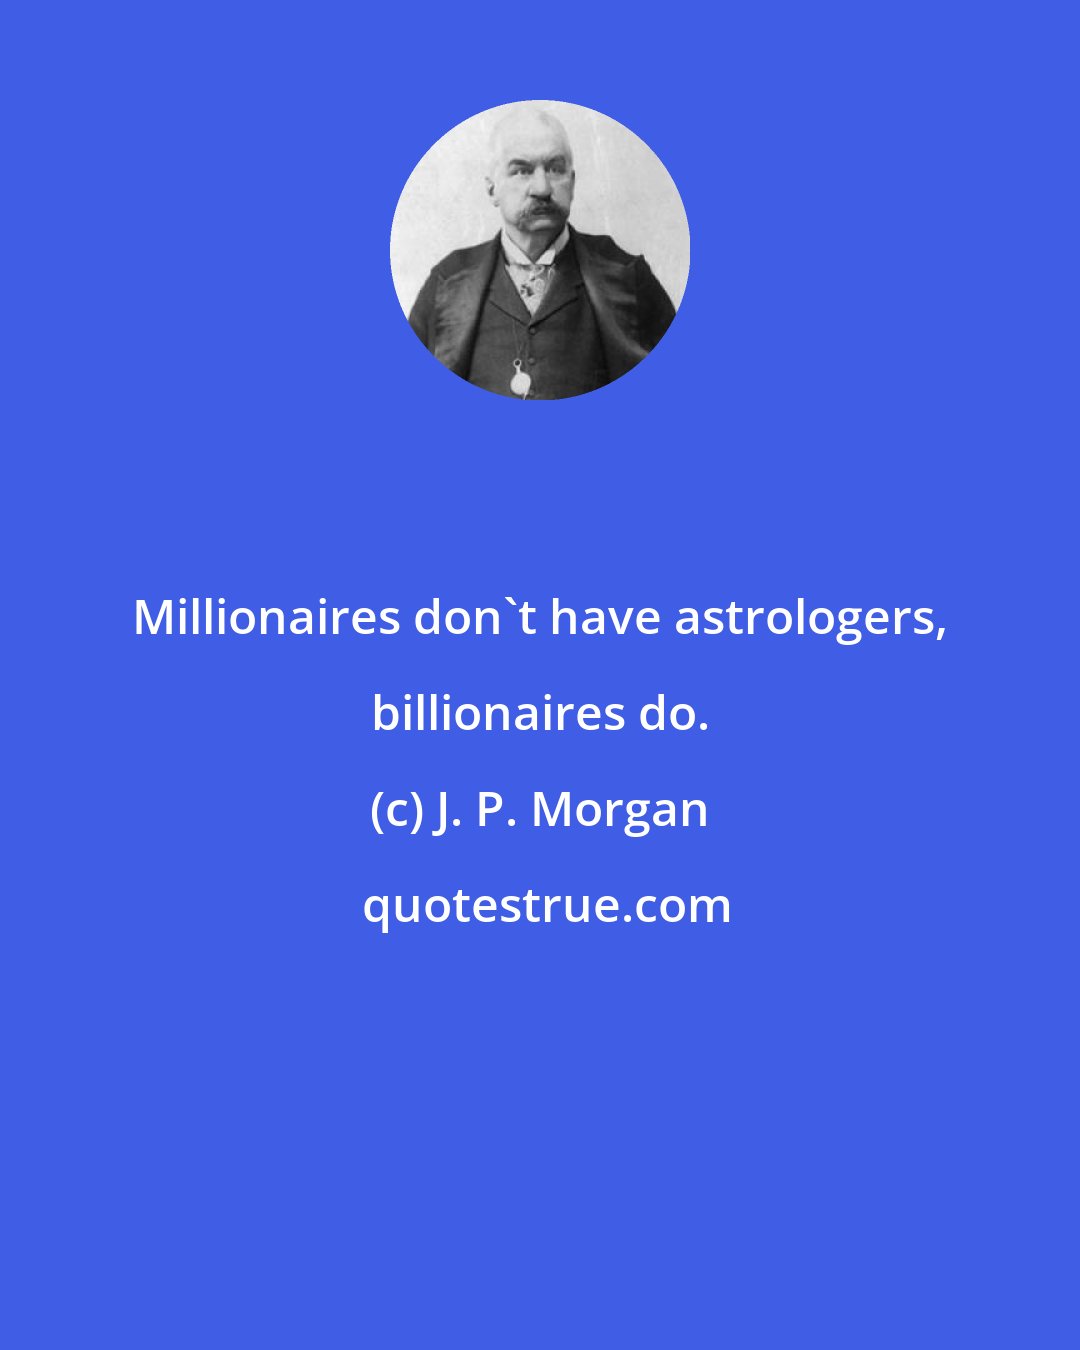 J. P. Morgan: Millionaires don't have astrologers, billionaires do.